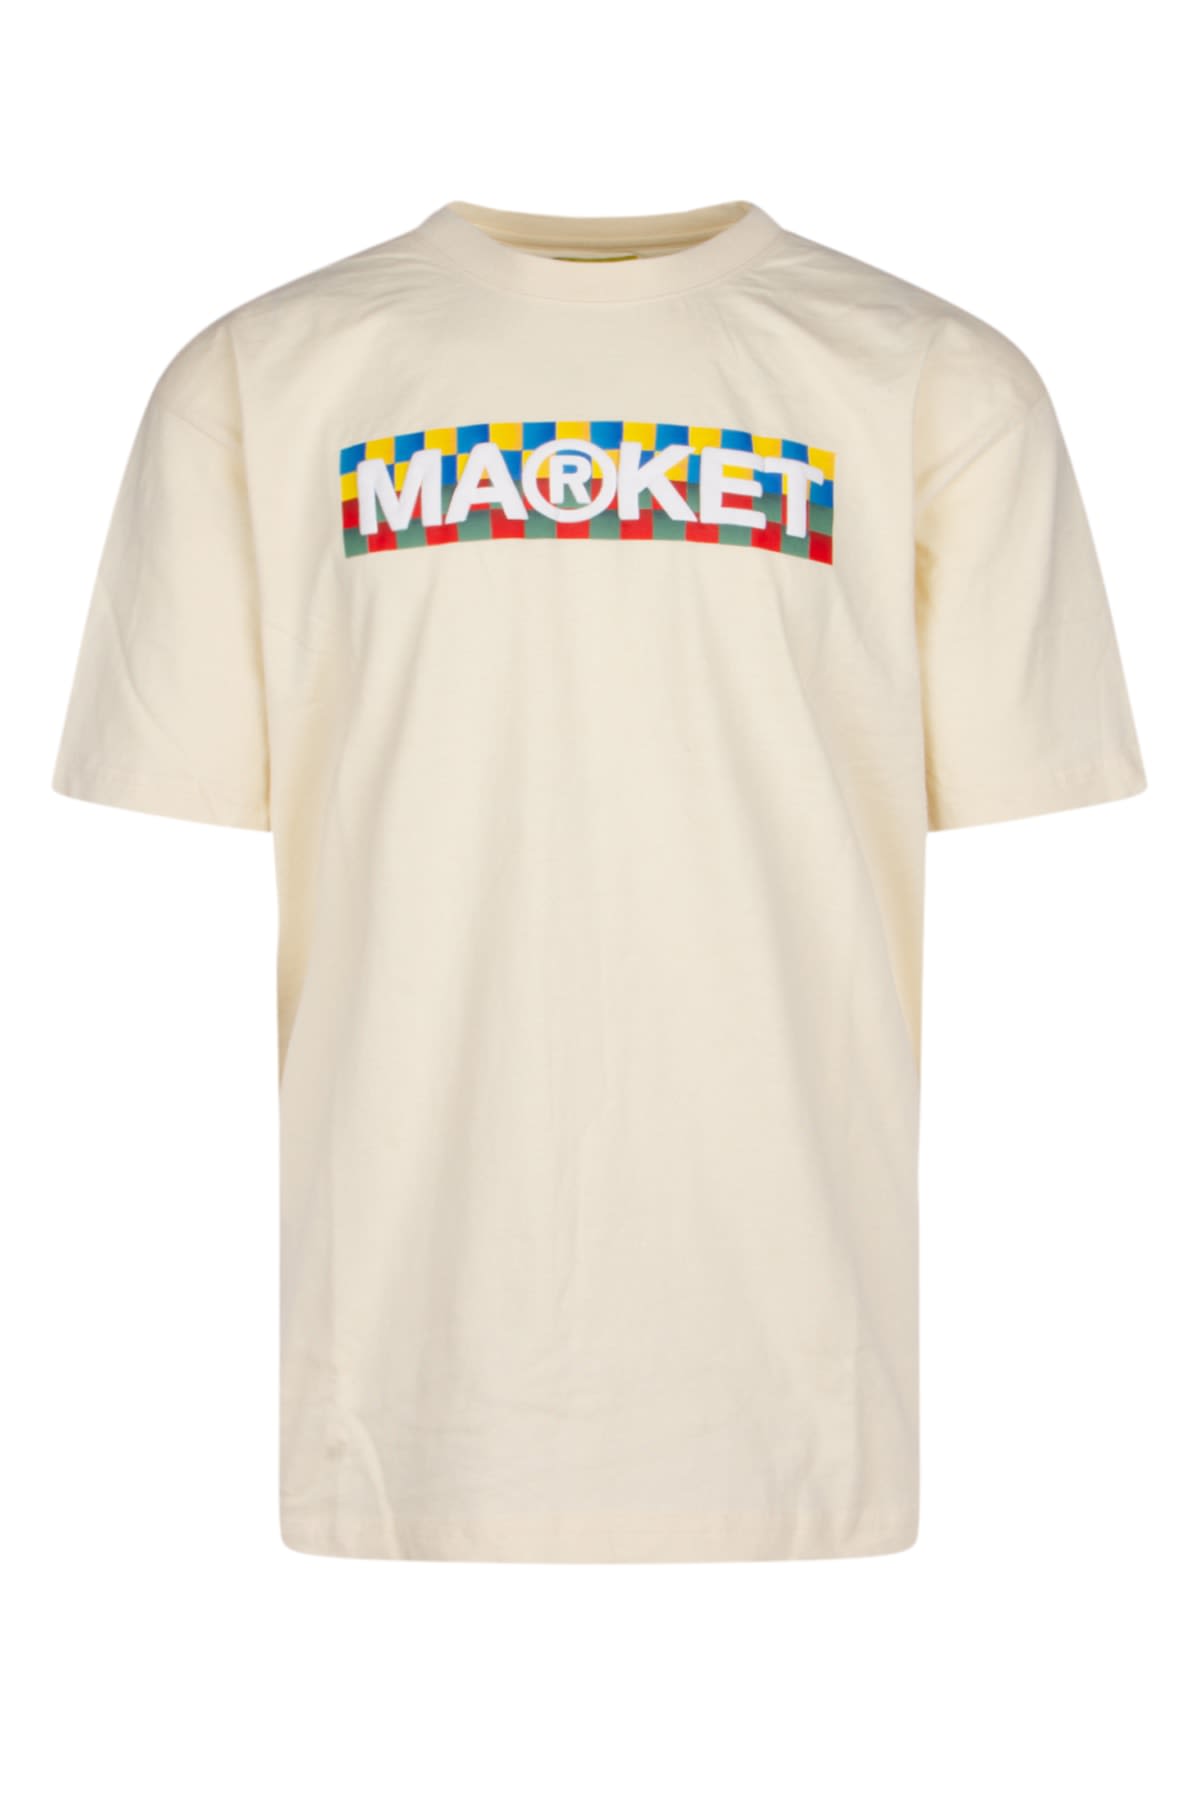 Market T-shirt